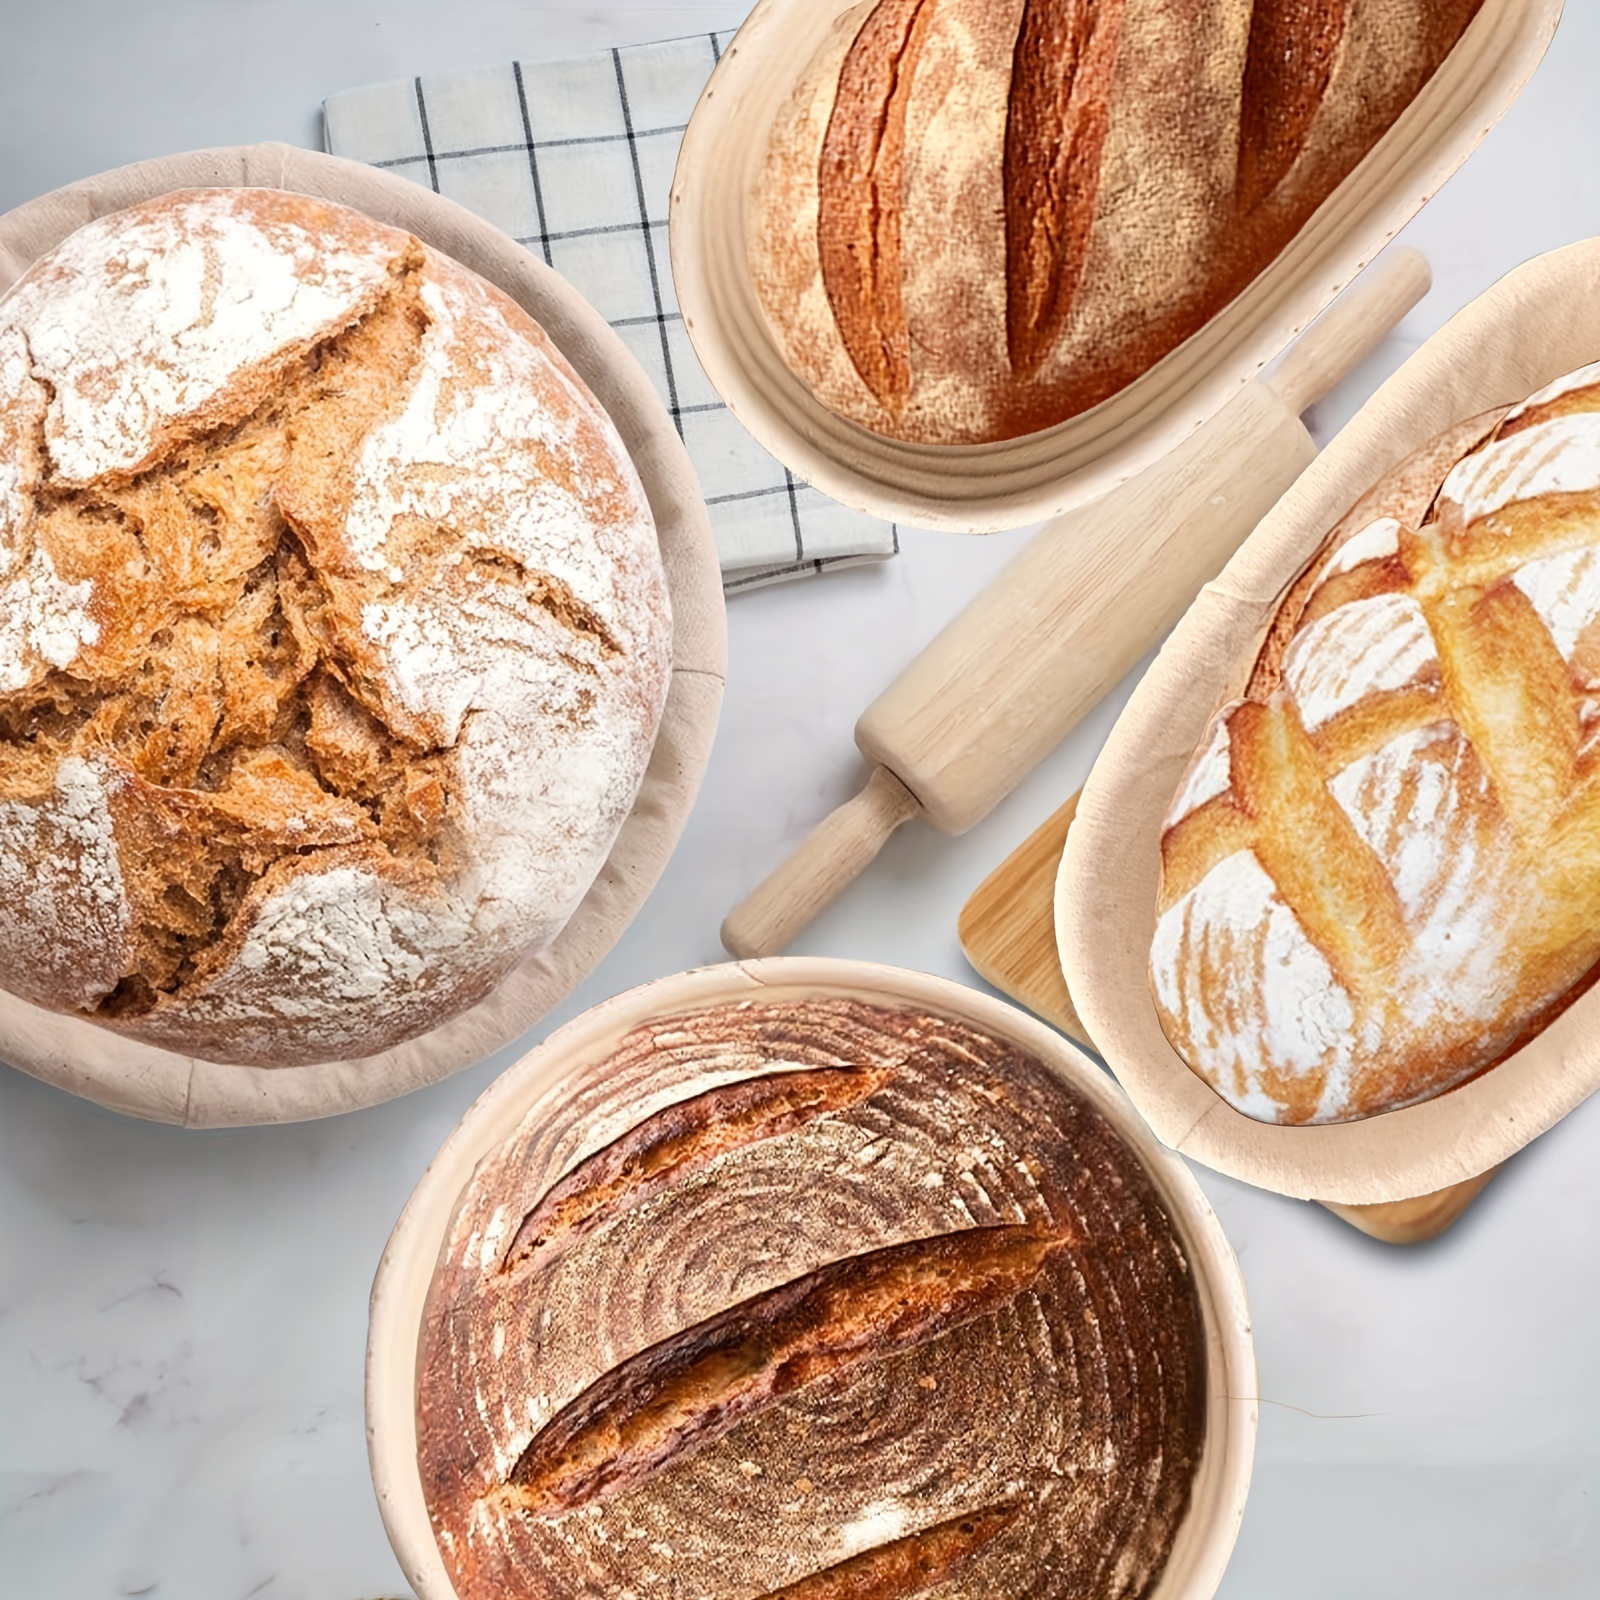 Sourdough Start Kit - Sourdough Bread Baking Supplies 2 Banneton